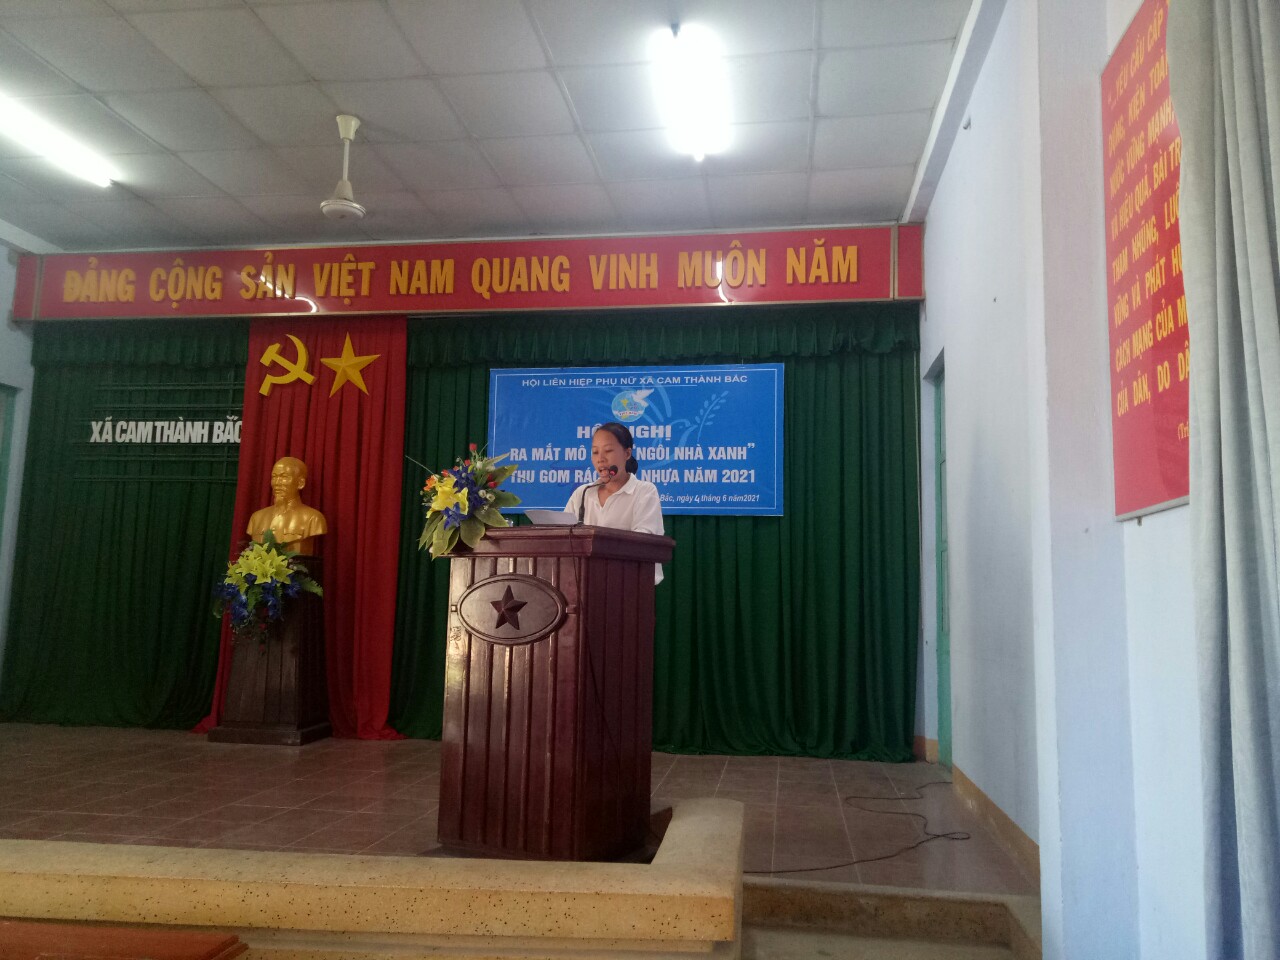 Đại diện lãnh đạo Hội LHPN xã Cam Thành Bắc phát biểu ra mắt.jpg (226 KB)